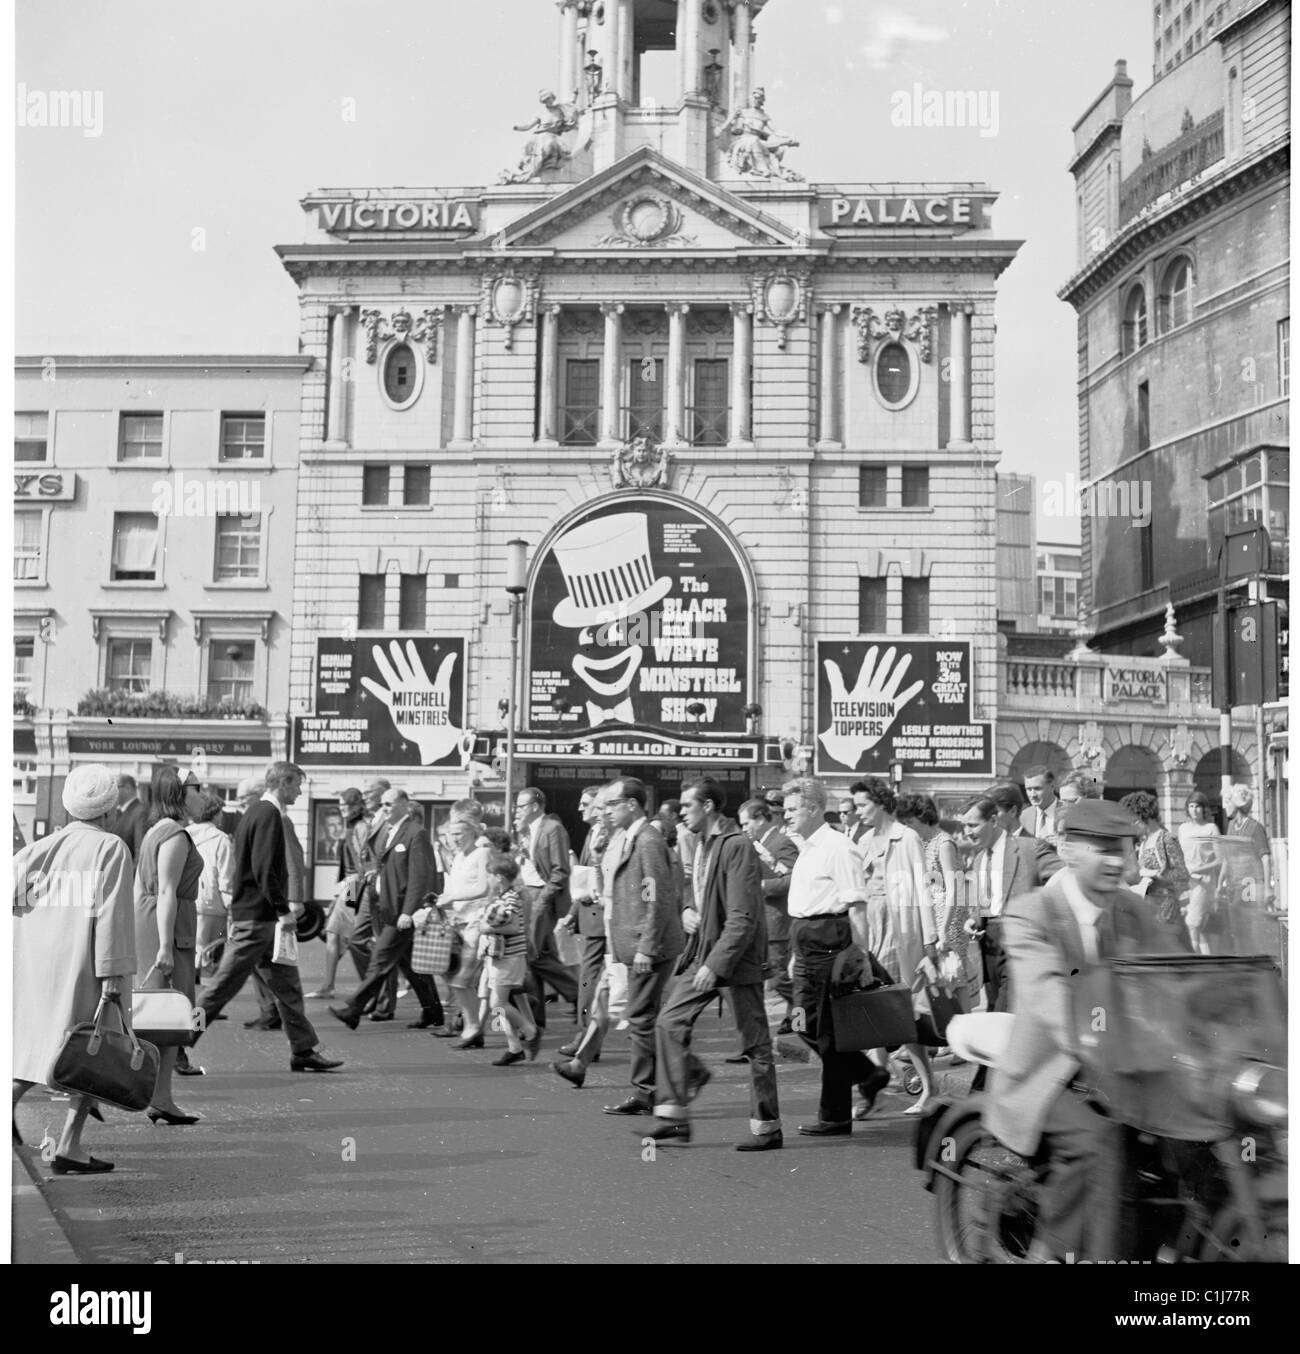 Années 1960, les gens devant le théâtre Victoria Palace, West End, Londres, lieu du Black and White Minstrel Show, un spectacle de variétés réussi de la journée. Banque D'Images